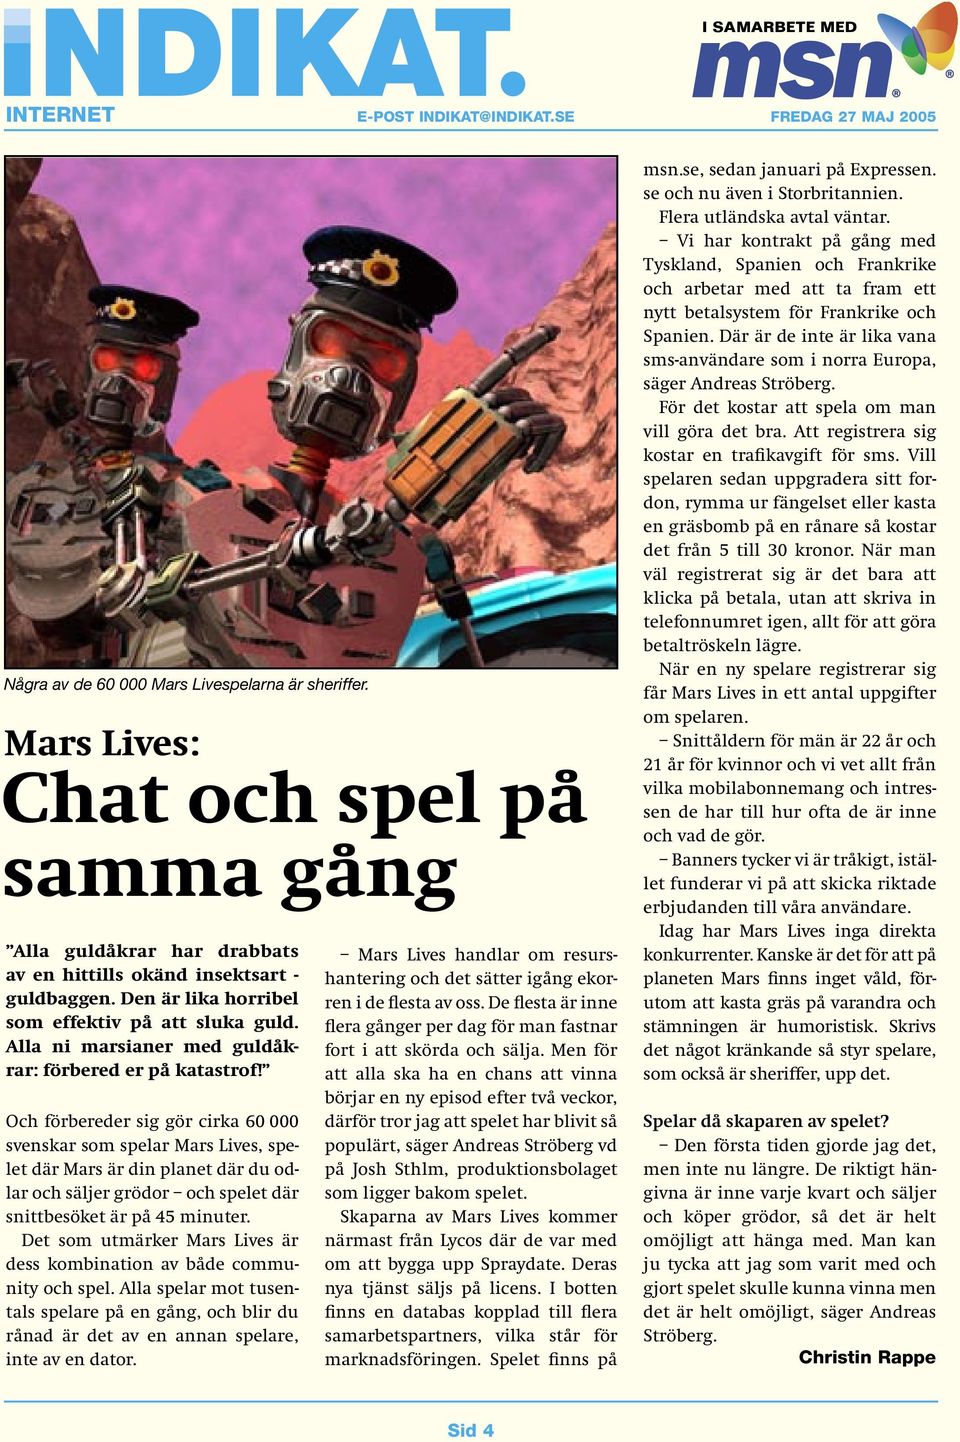 Och förbereder sig gör cirka 60 000 svenskar som spelar Mars Lives, spelet där Mars är din planet där du odlar och säljer grödor och spelet där snittbesöket är på 45 minuter.